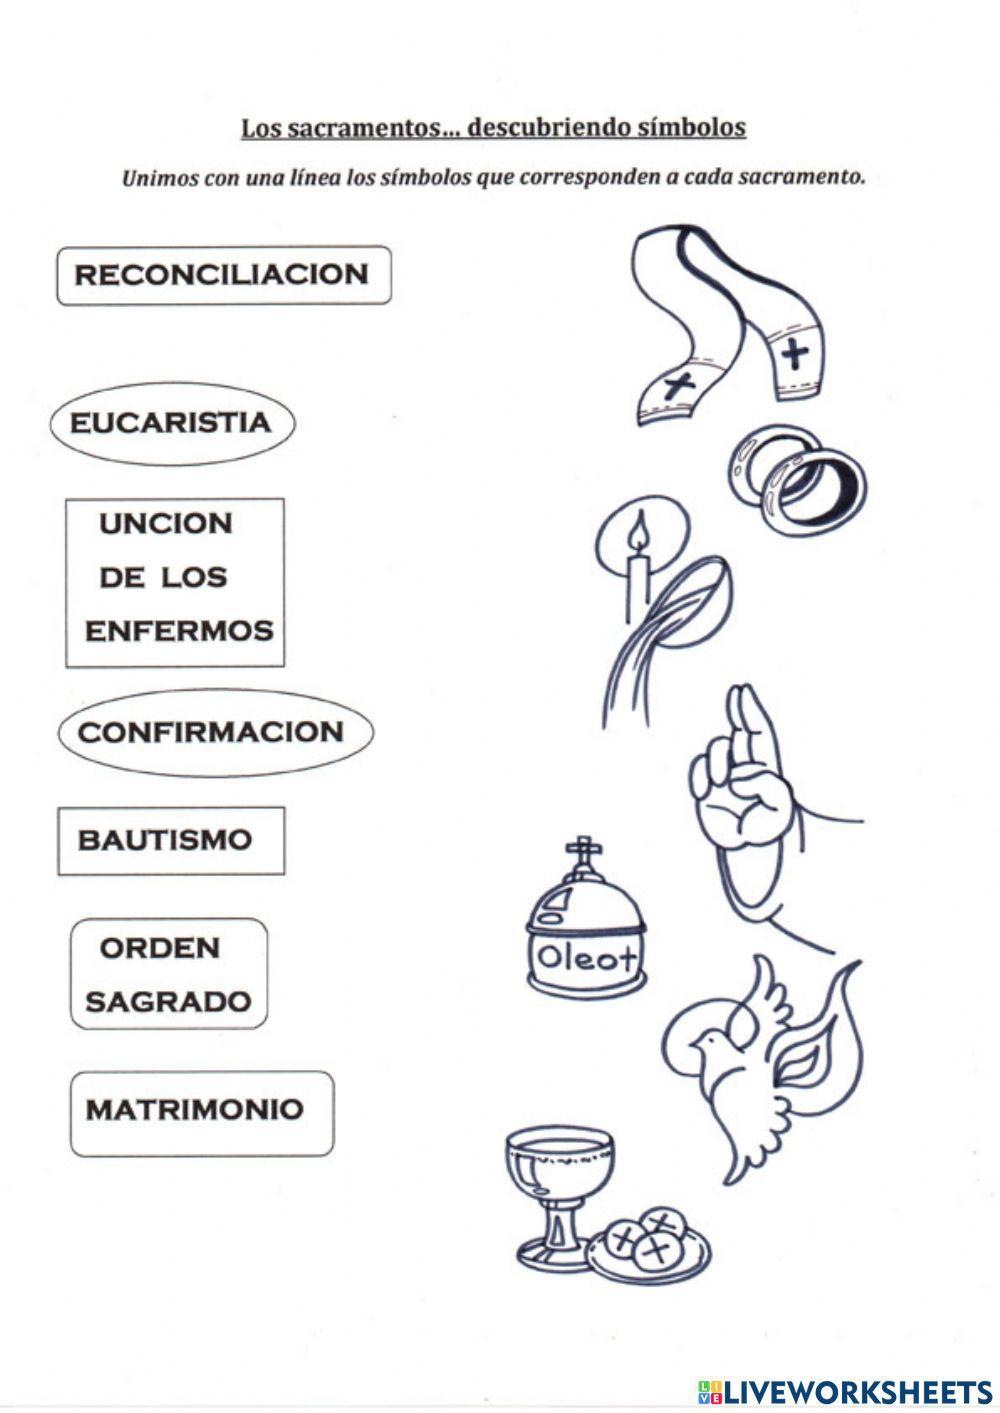 Los simbolos de los sacramentos